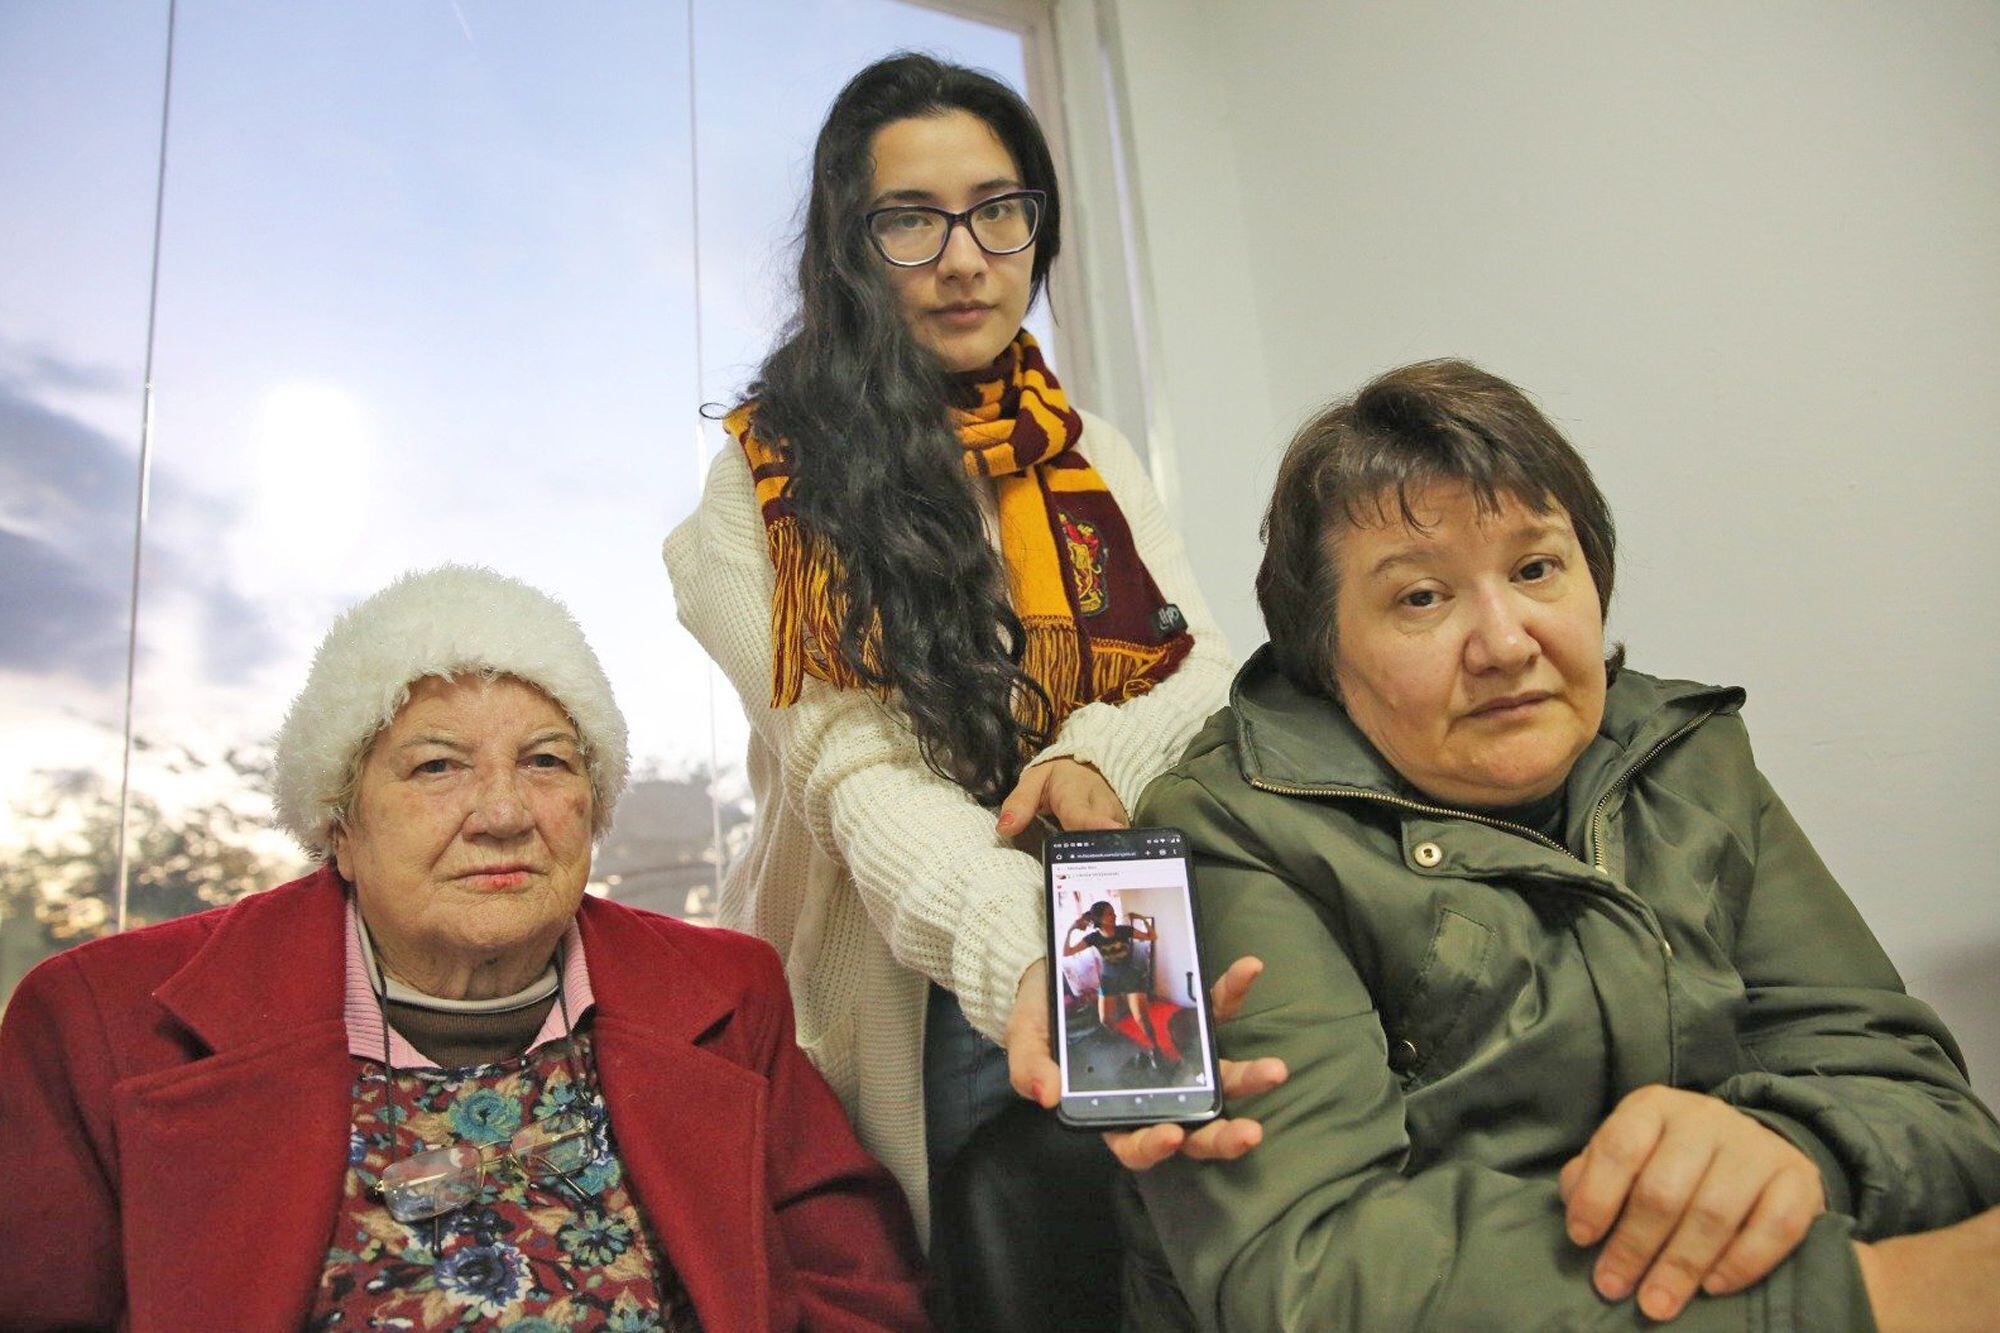 La hermana, la tía abuela y la madre de Cecilia Strzyzowksi, la joven desaparecida en Chaco; denuncian amenazas y piden justicia